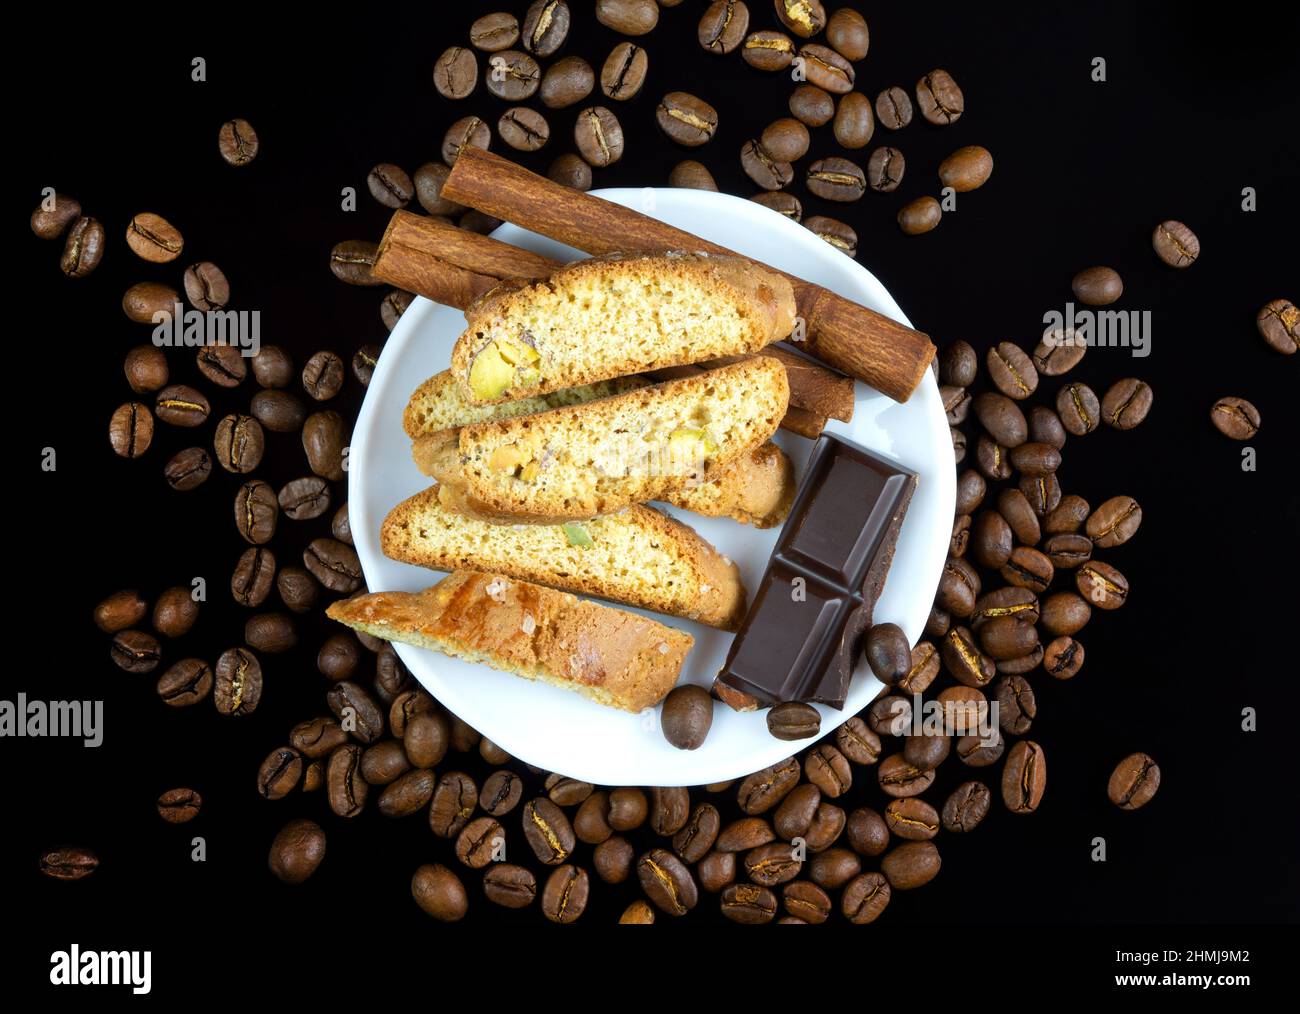 Cinnanon-Sticks, Schokolade und Bisquits auf einem weißen Teller, umgeben von Kaffeebohnen auf schwarzem, reflektierendem Hintergrund Stockfoto